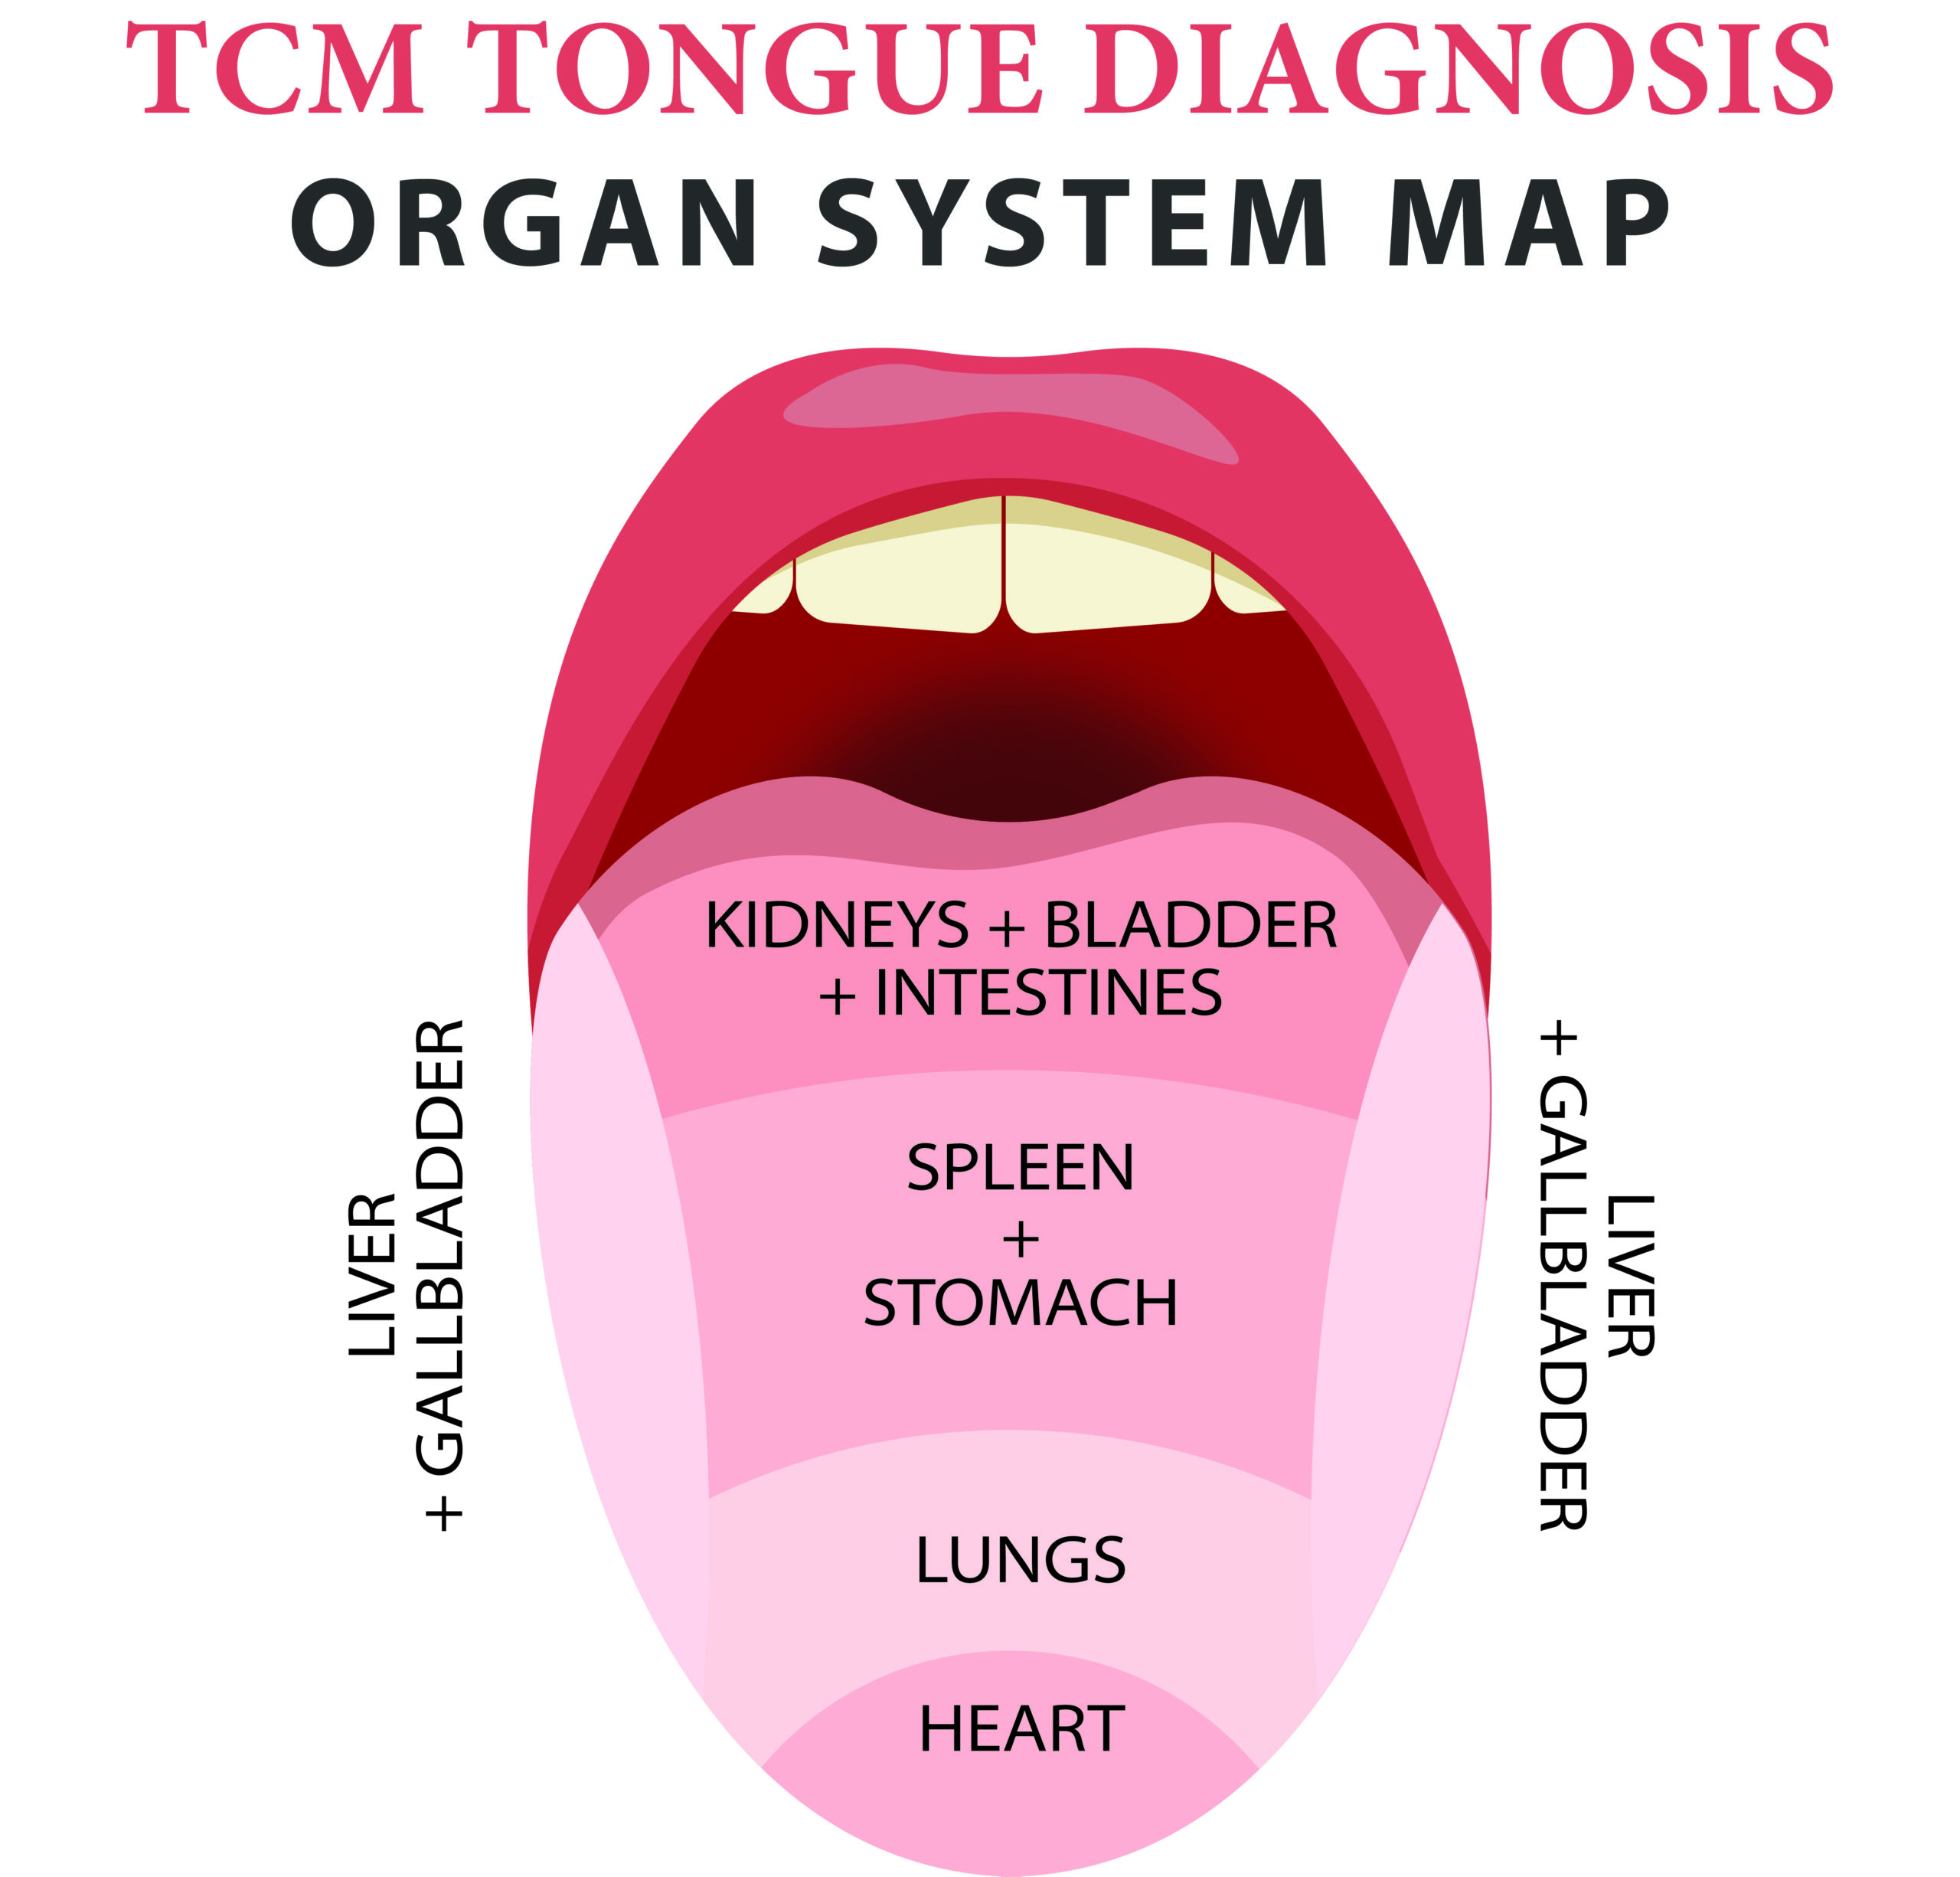 TCM Tongue Diagnosis Organ System Map